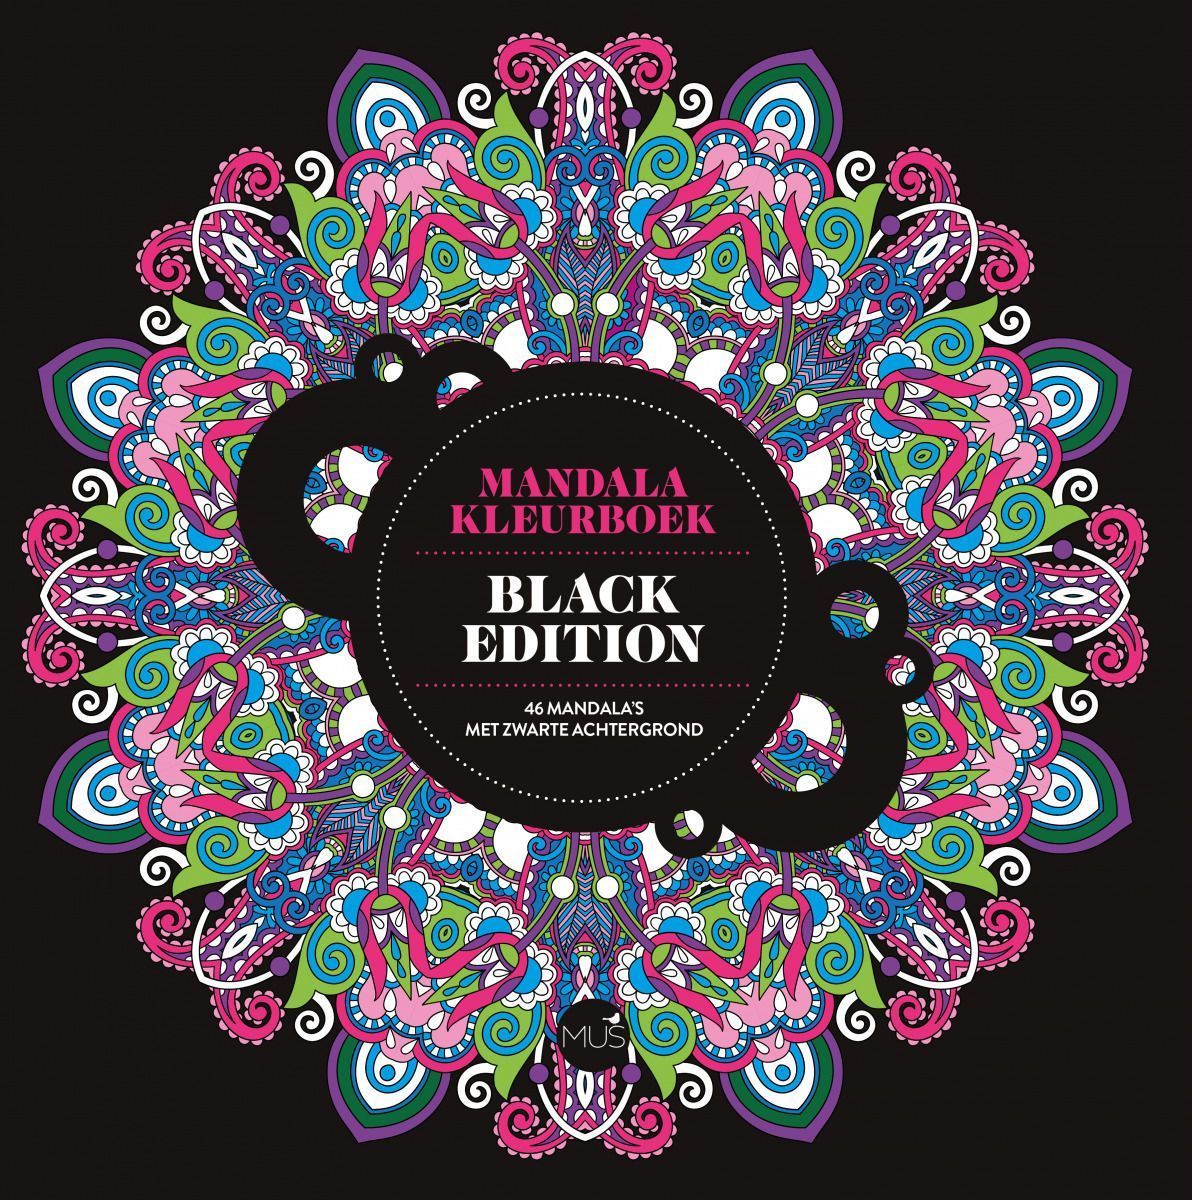 Tot ziens doos knelpunt Mandala kleurboek Black Edition Kopen? ⋆ Invulboekjes.nl